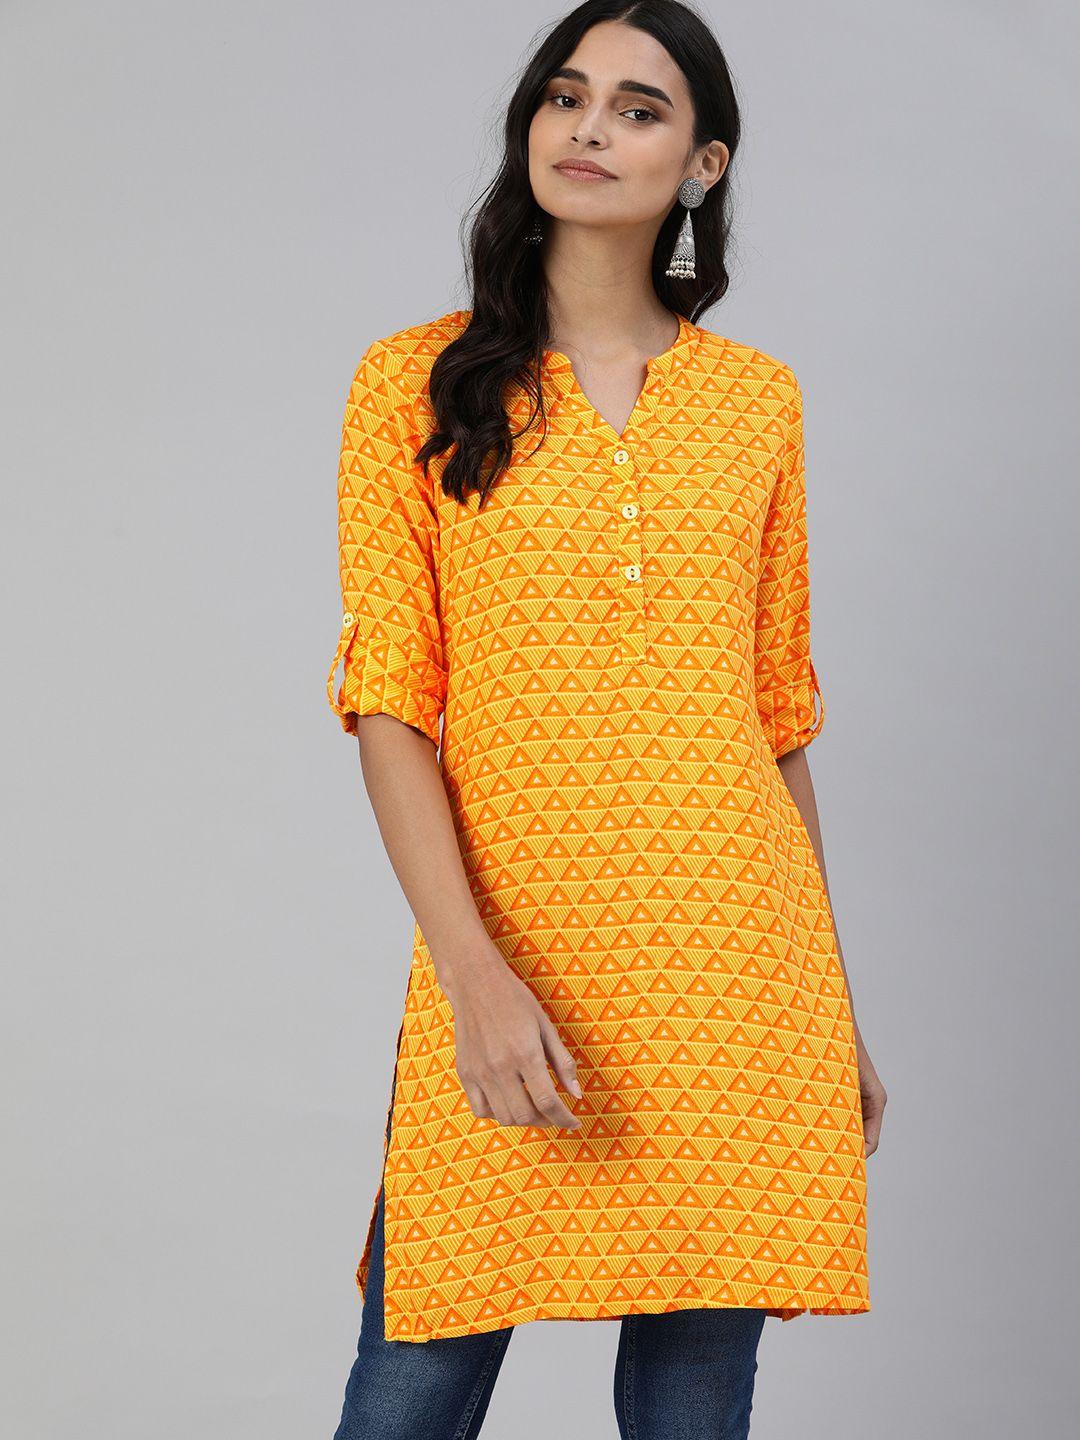 global desi women's orange & yellow printed tunic